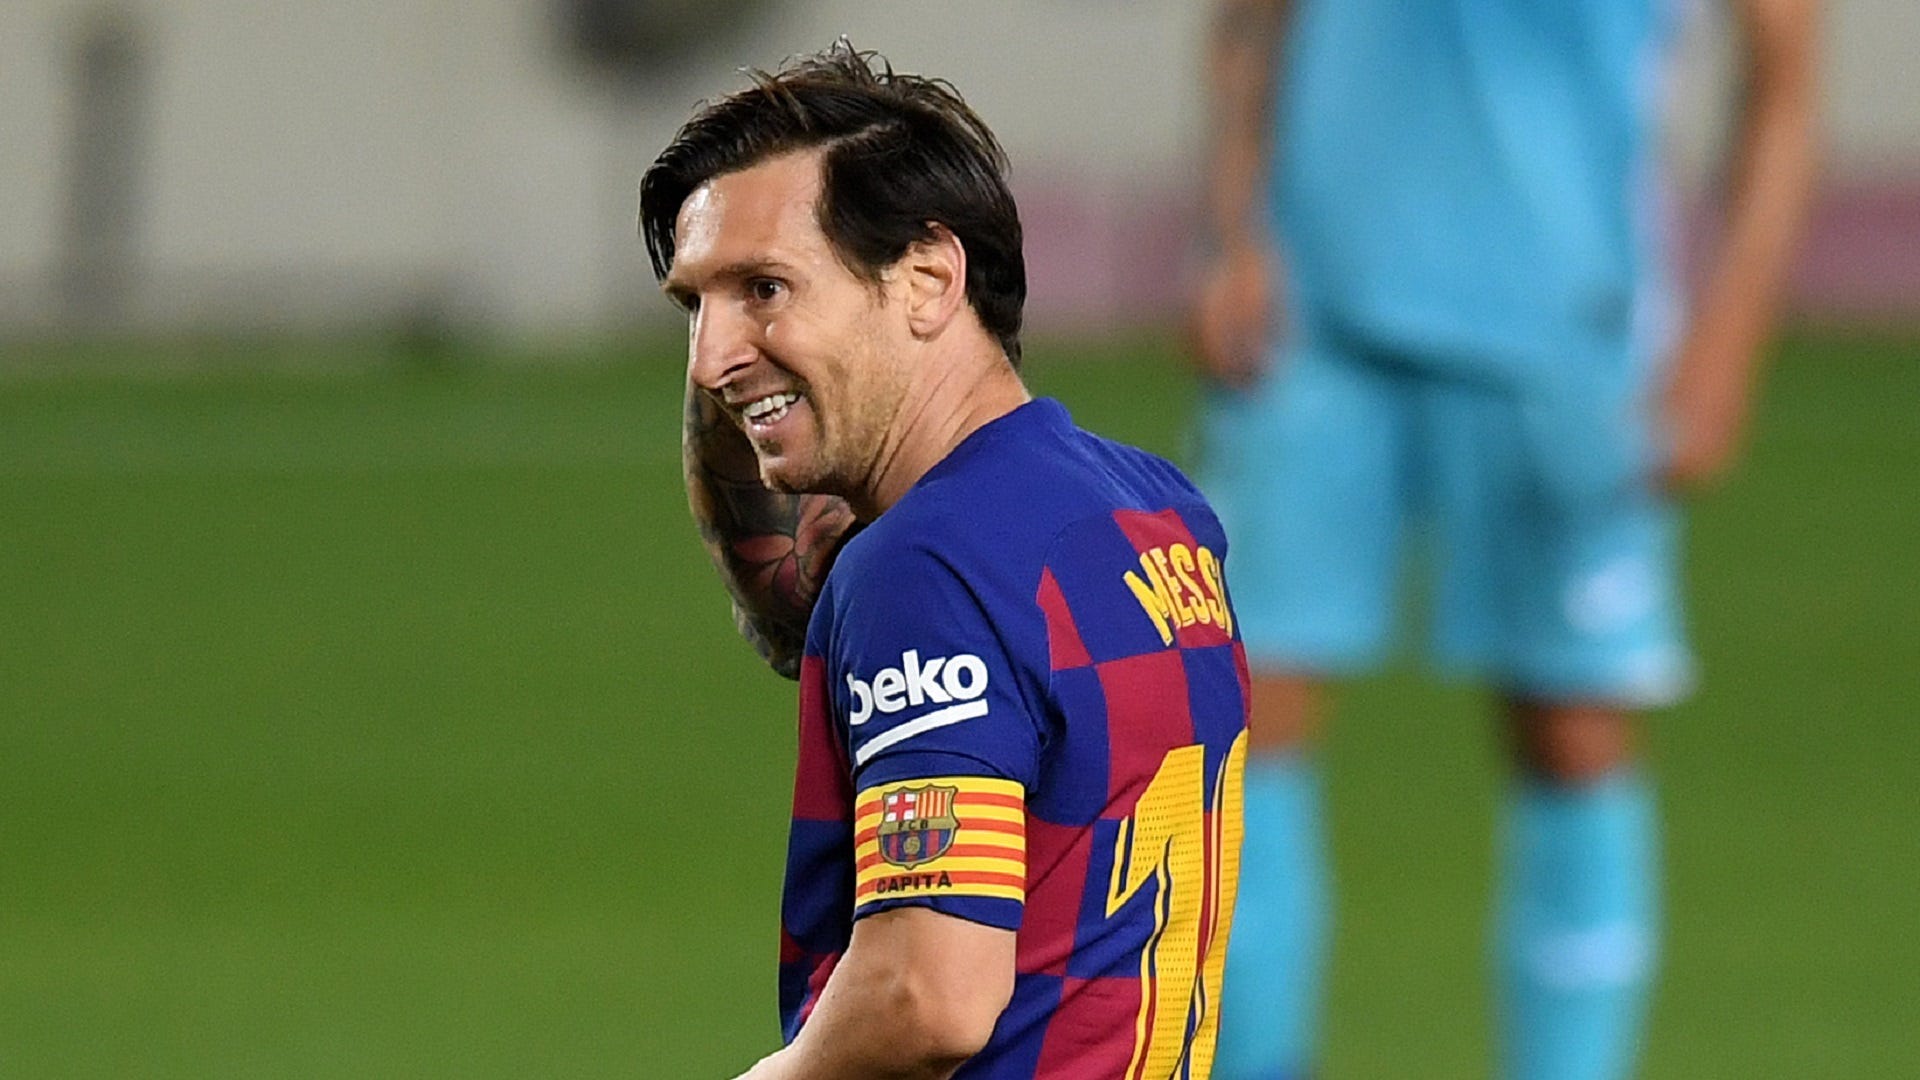 Messi: Hãy cùng đến với hình ảnh của siêu sao bóng đá Lionel Messi, người đã ghi dấu ấn rõ nét trong lịch sử của môn thể thao vua này. Xem ngay để được trải nghiệm những khoảnh khắc đầy ấn tượng và kì diệu của anh chàng hàng đầu này.